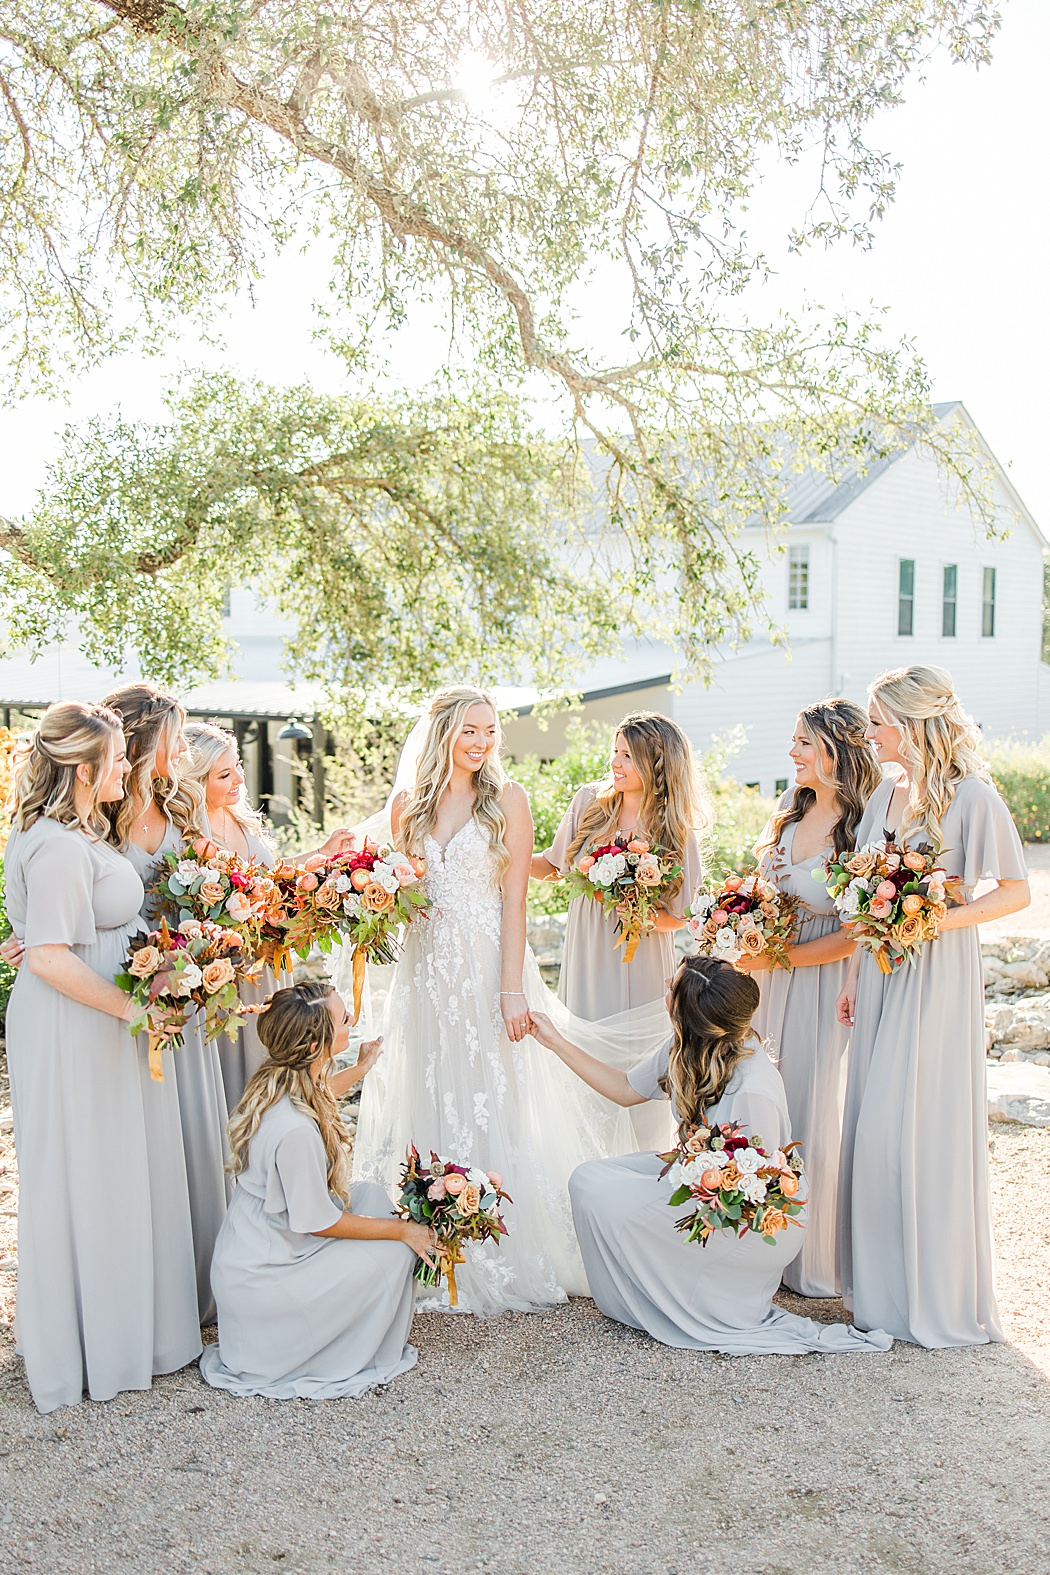 A Grey and Peach Fall Wedding at Contigo Ranch in Fredericksburg Texas by Allison Jeffers Photography 0002